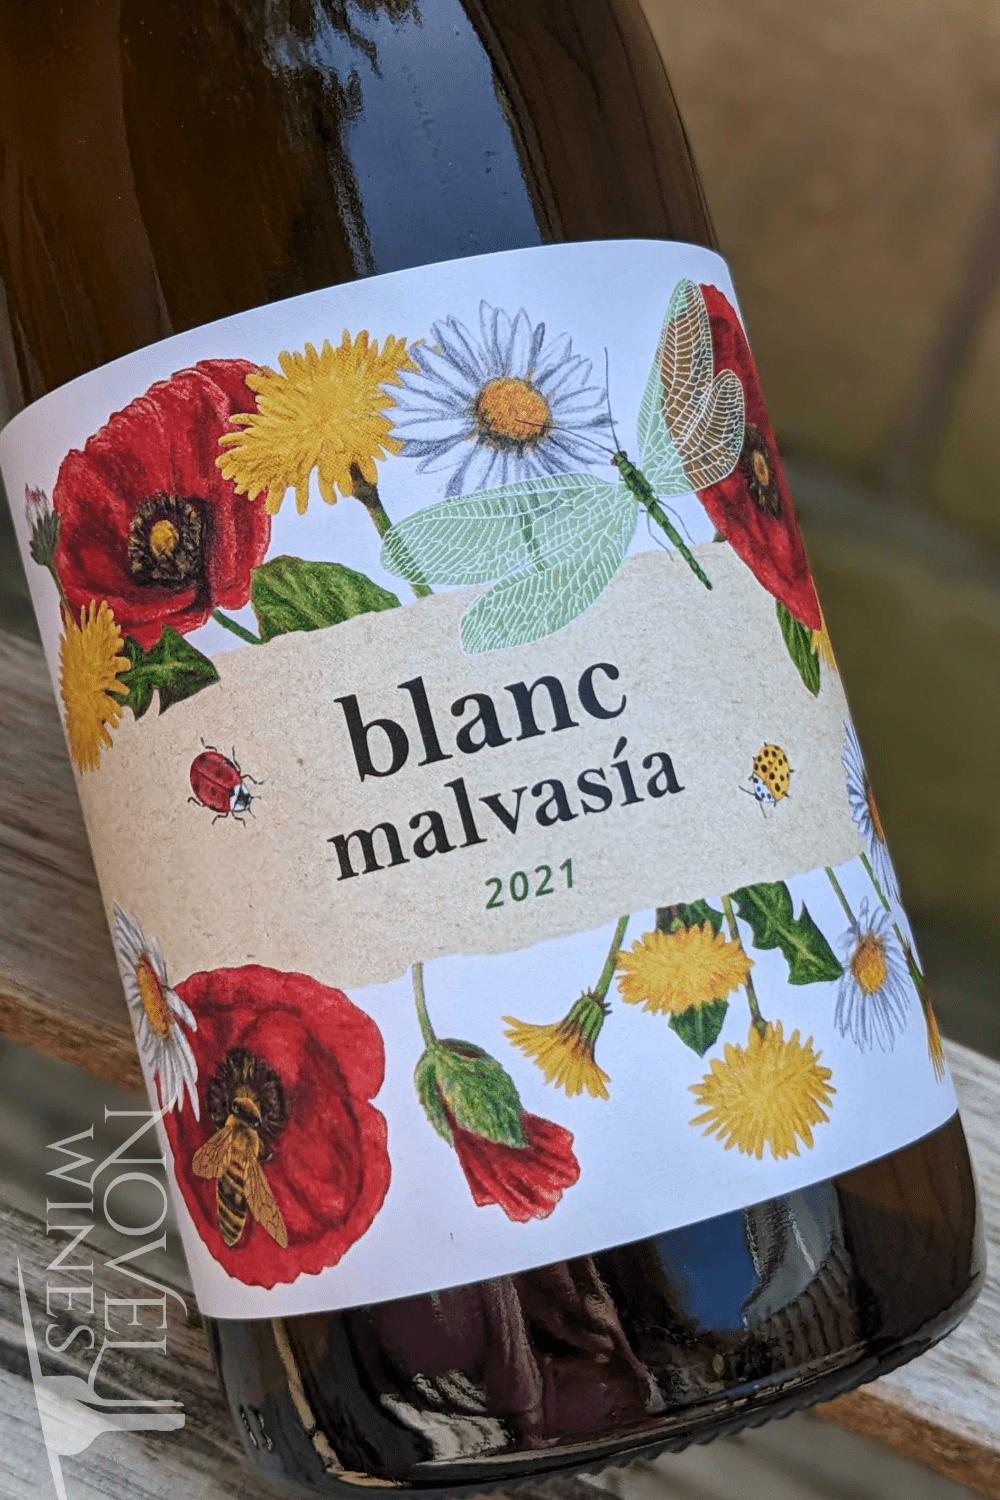 Novel Wines White Wine Bodegas Cherubino Blanc Malvasia 2021, Spain